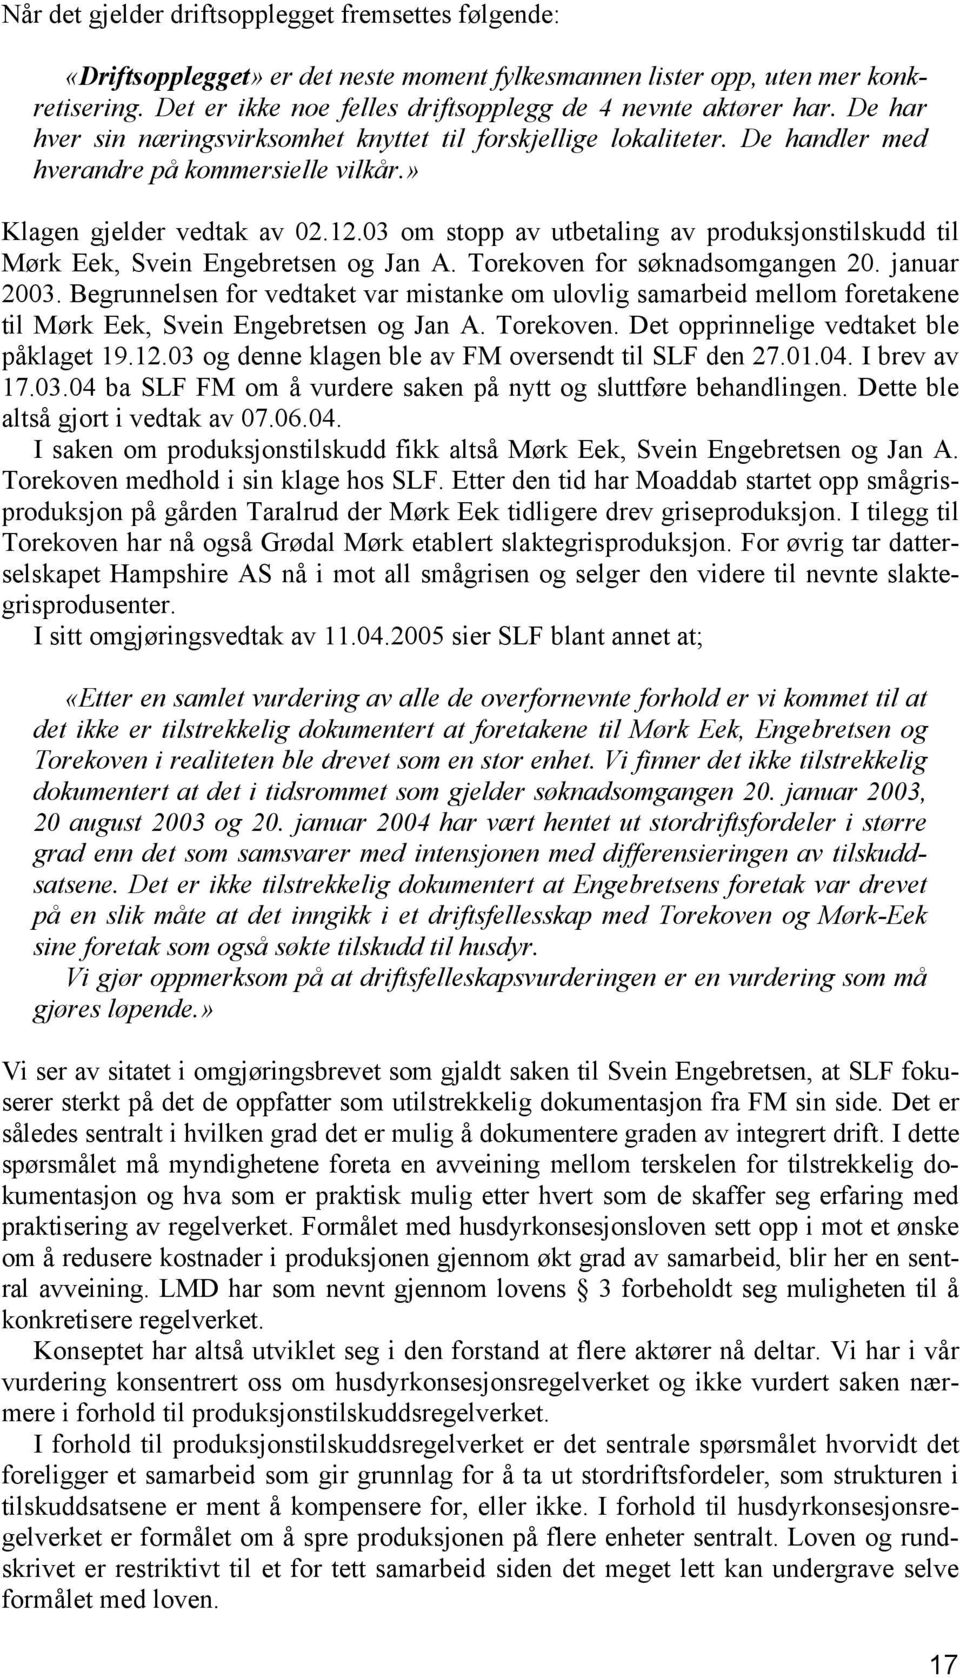 » Klagen gjelder vedtak av 02.12.03 om stopp av utbetaling av produksjonstilskudd til Mørk Eek, Svein Engebretsen og Jan A. Torekoven for søknadsomgangen 20. januar 2003.